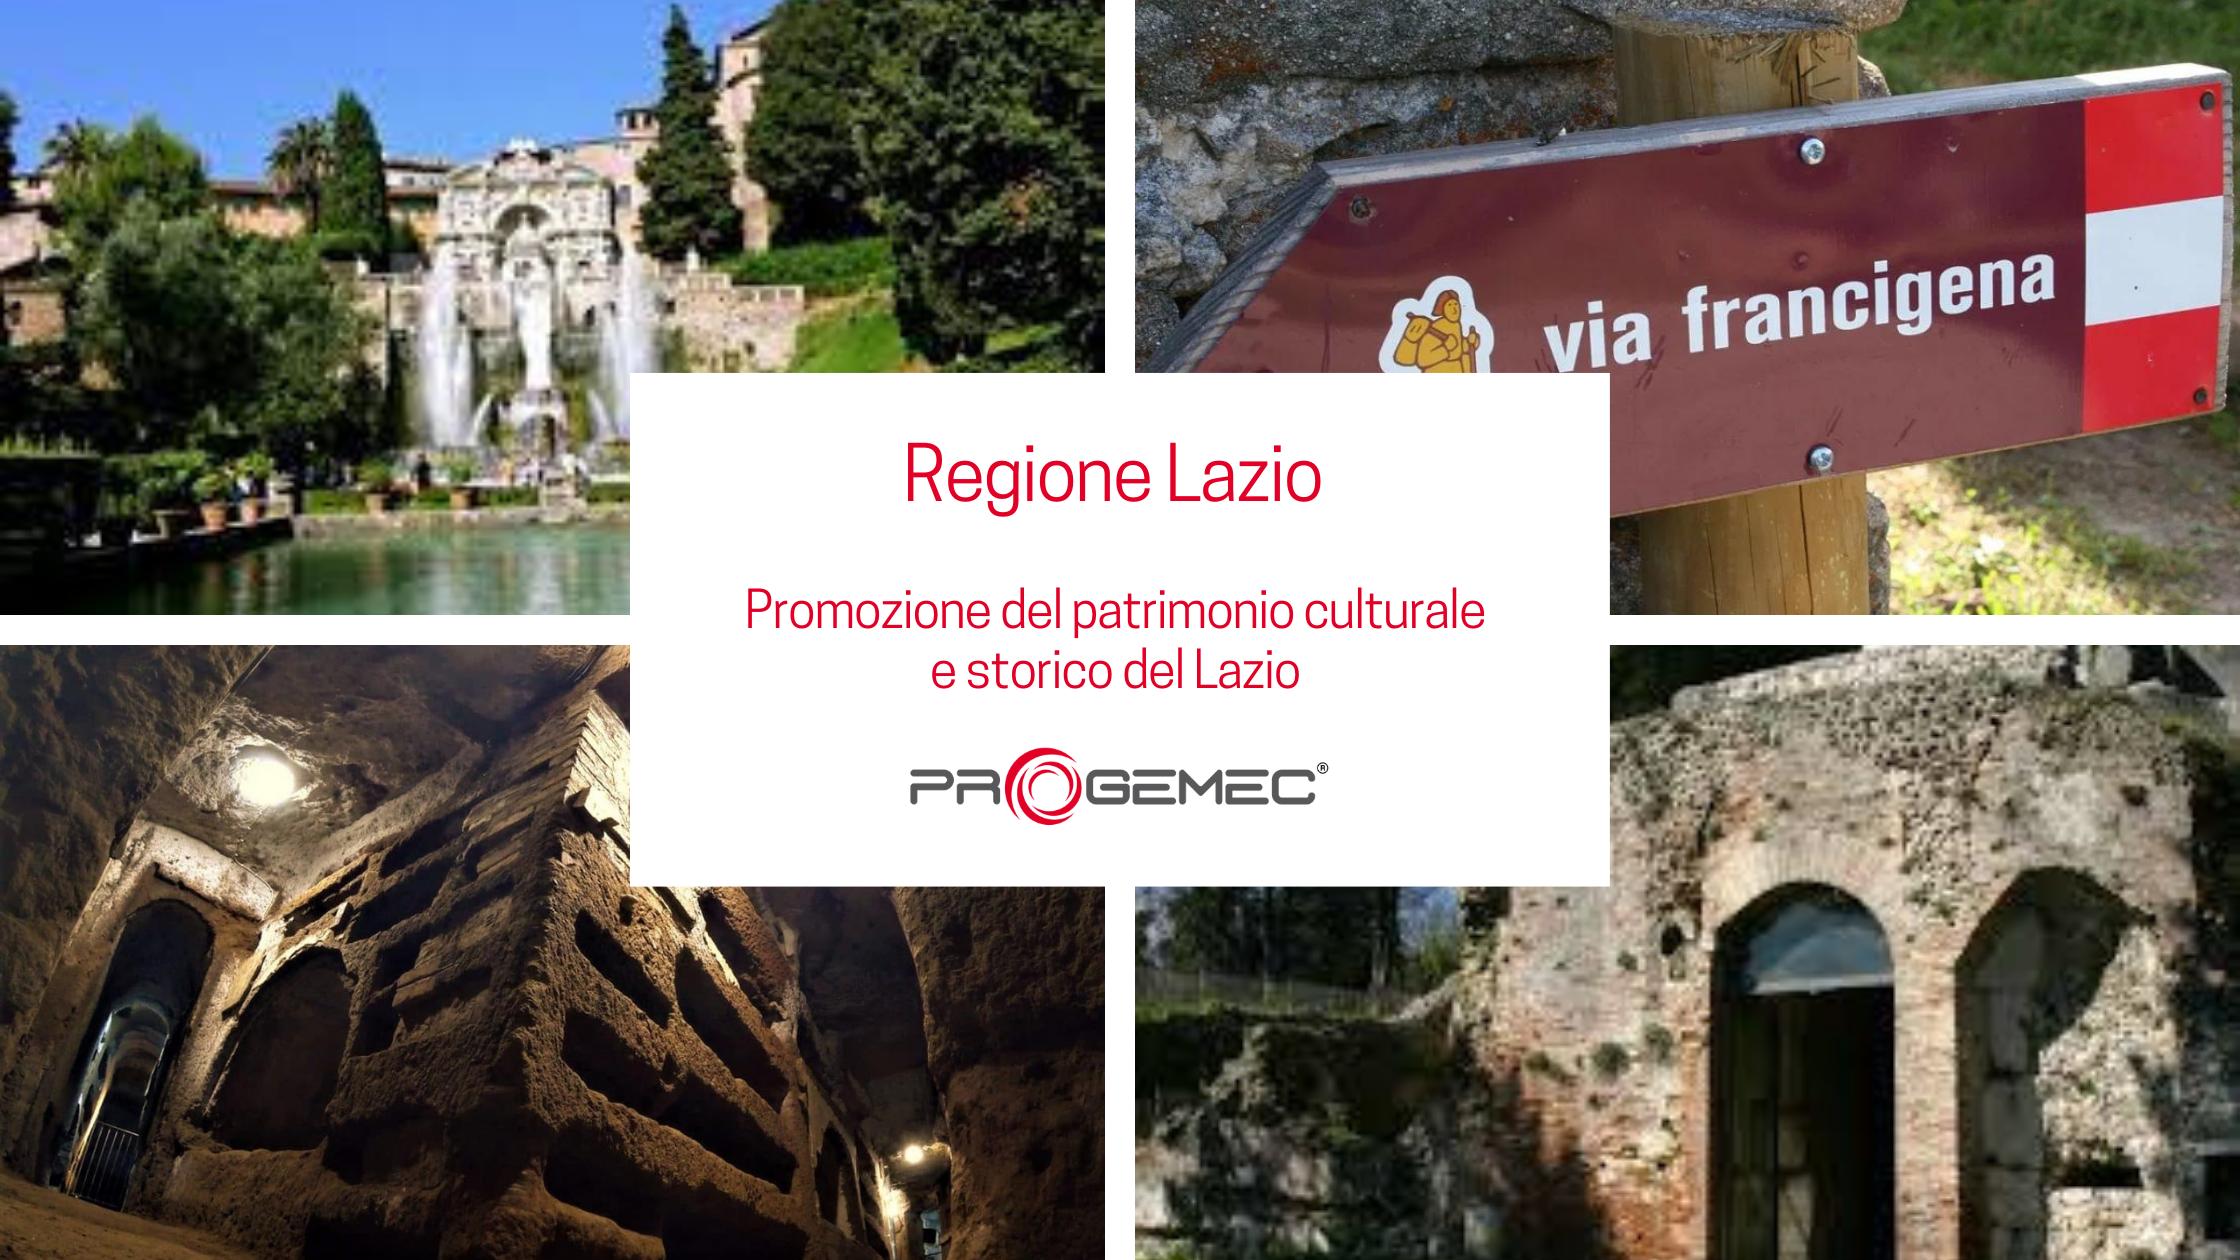 Regione Lazio - Promozione del patrimonio culturale e storico del Lazio